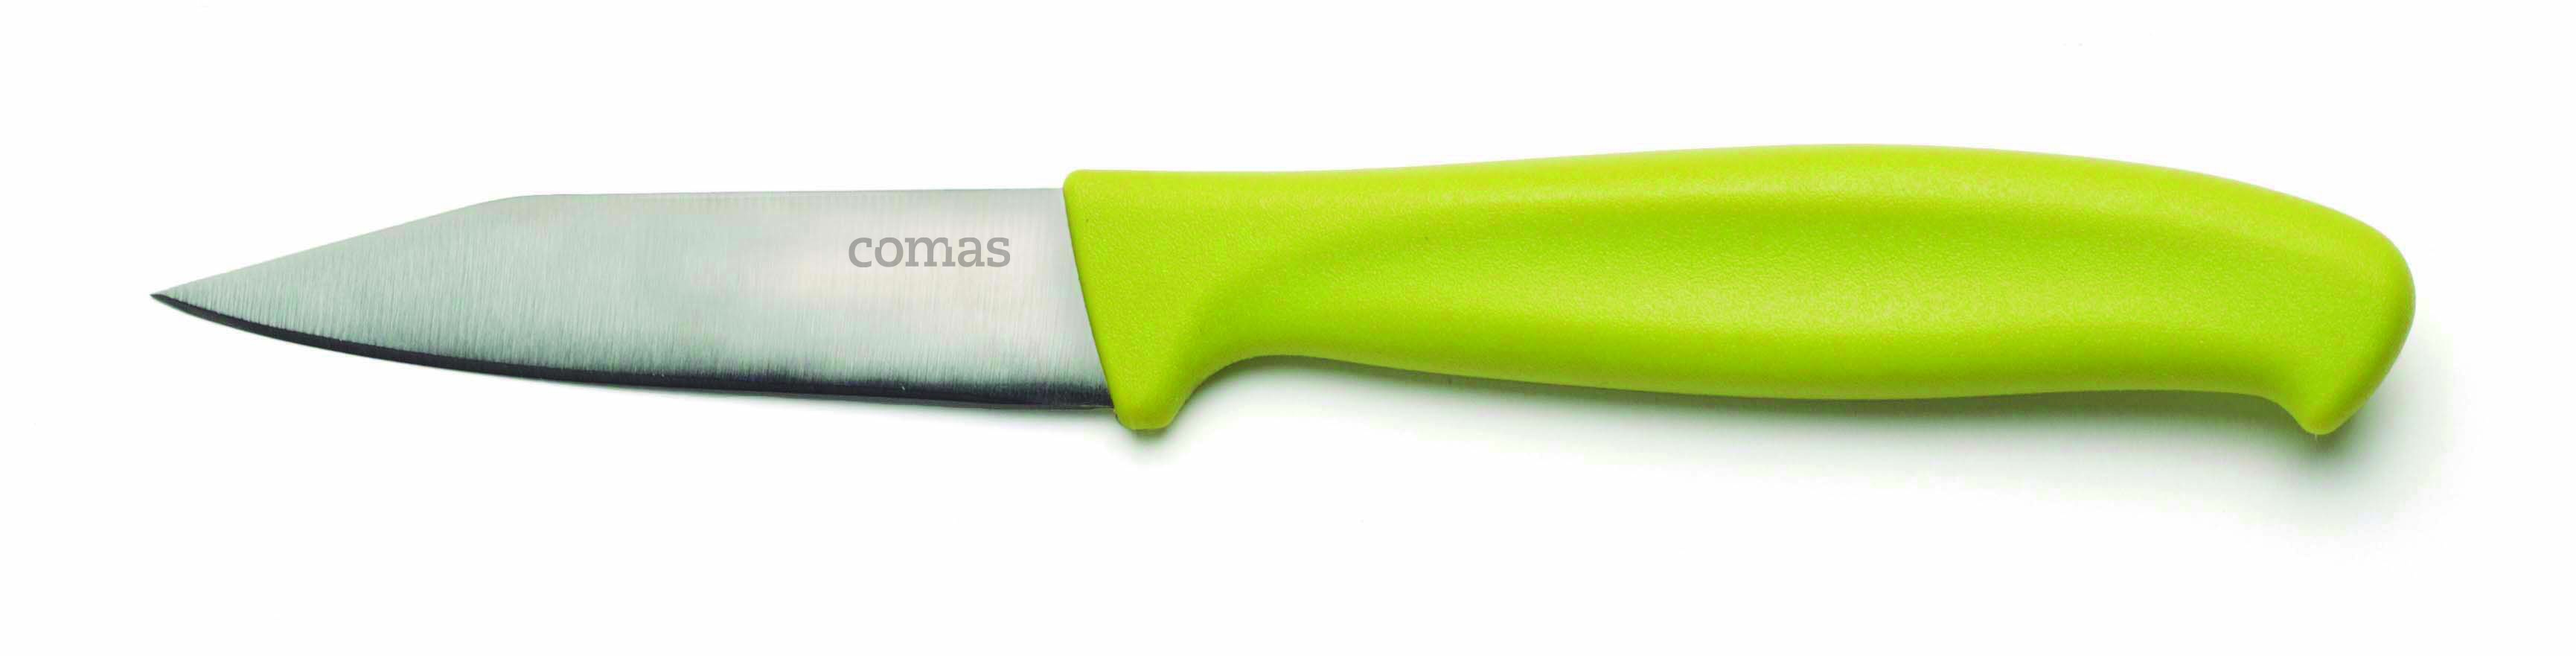 Μαχαίρι Λαχανικών-Ξεφλουδίσματος Πράσινο Comas 19,5εκ. CO07536000 (Σετ 2 Τεμάχια) (Χρώμα: Πράσινο ) – Comas – CO07536000